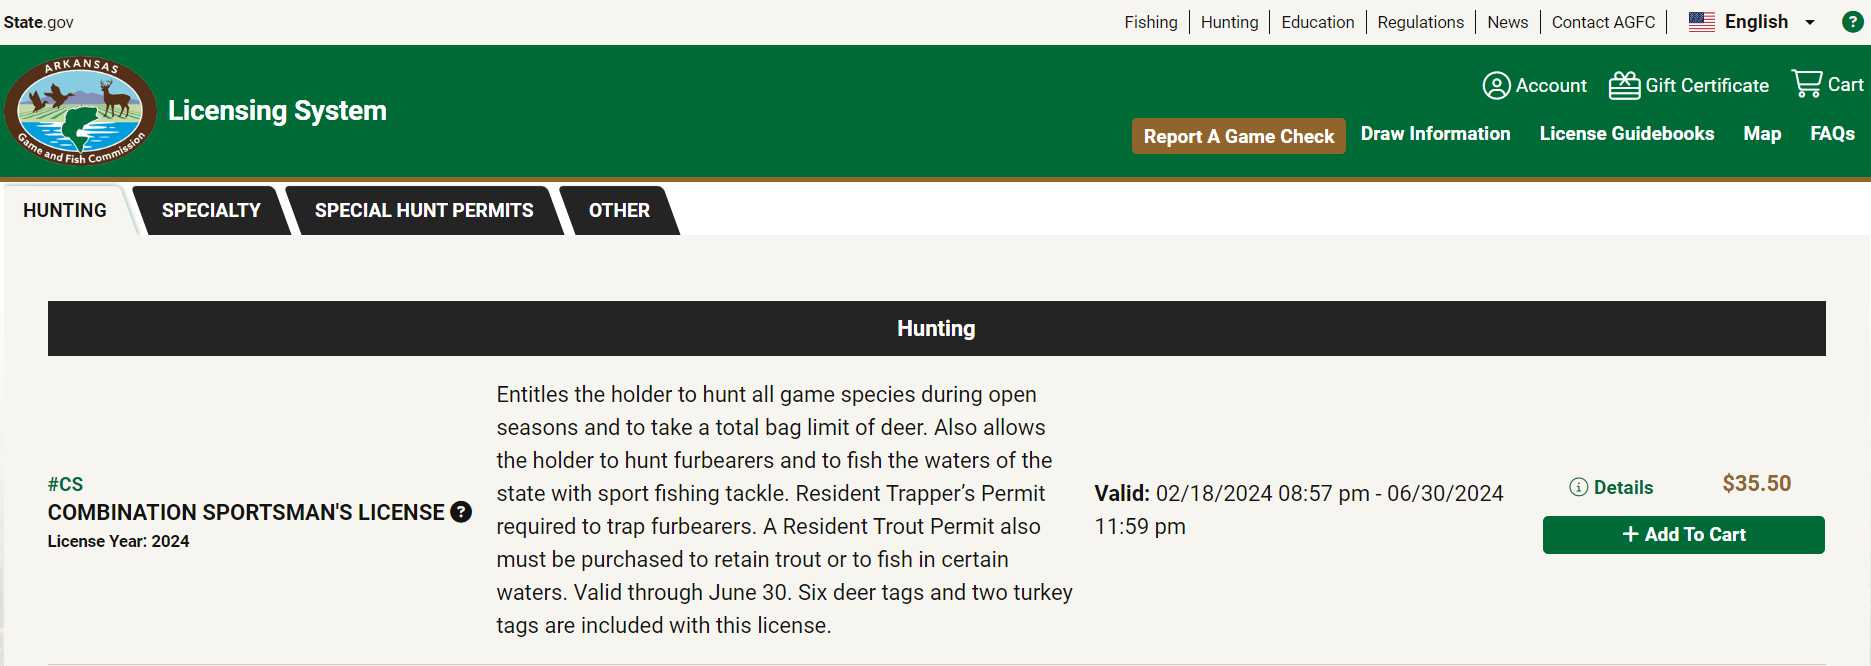 Arkansas Hunting Season 2024: Dates, Limits and Fees - Kalkal